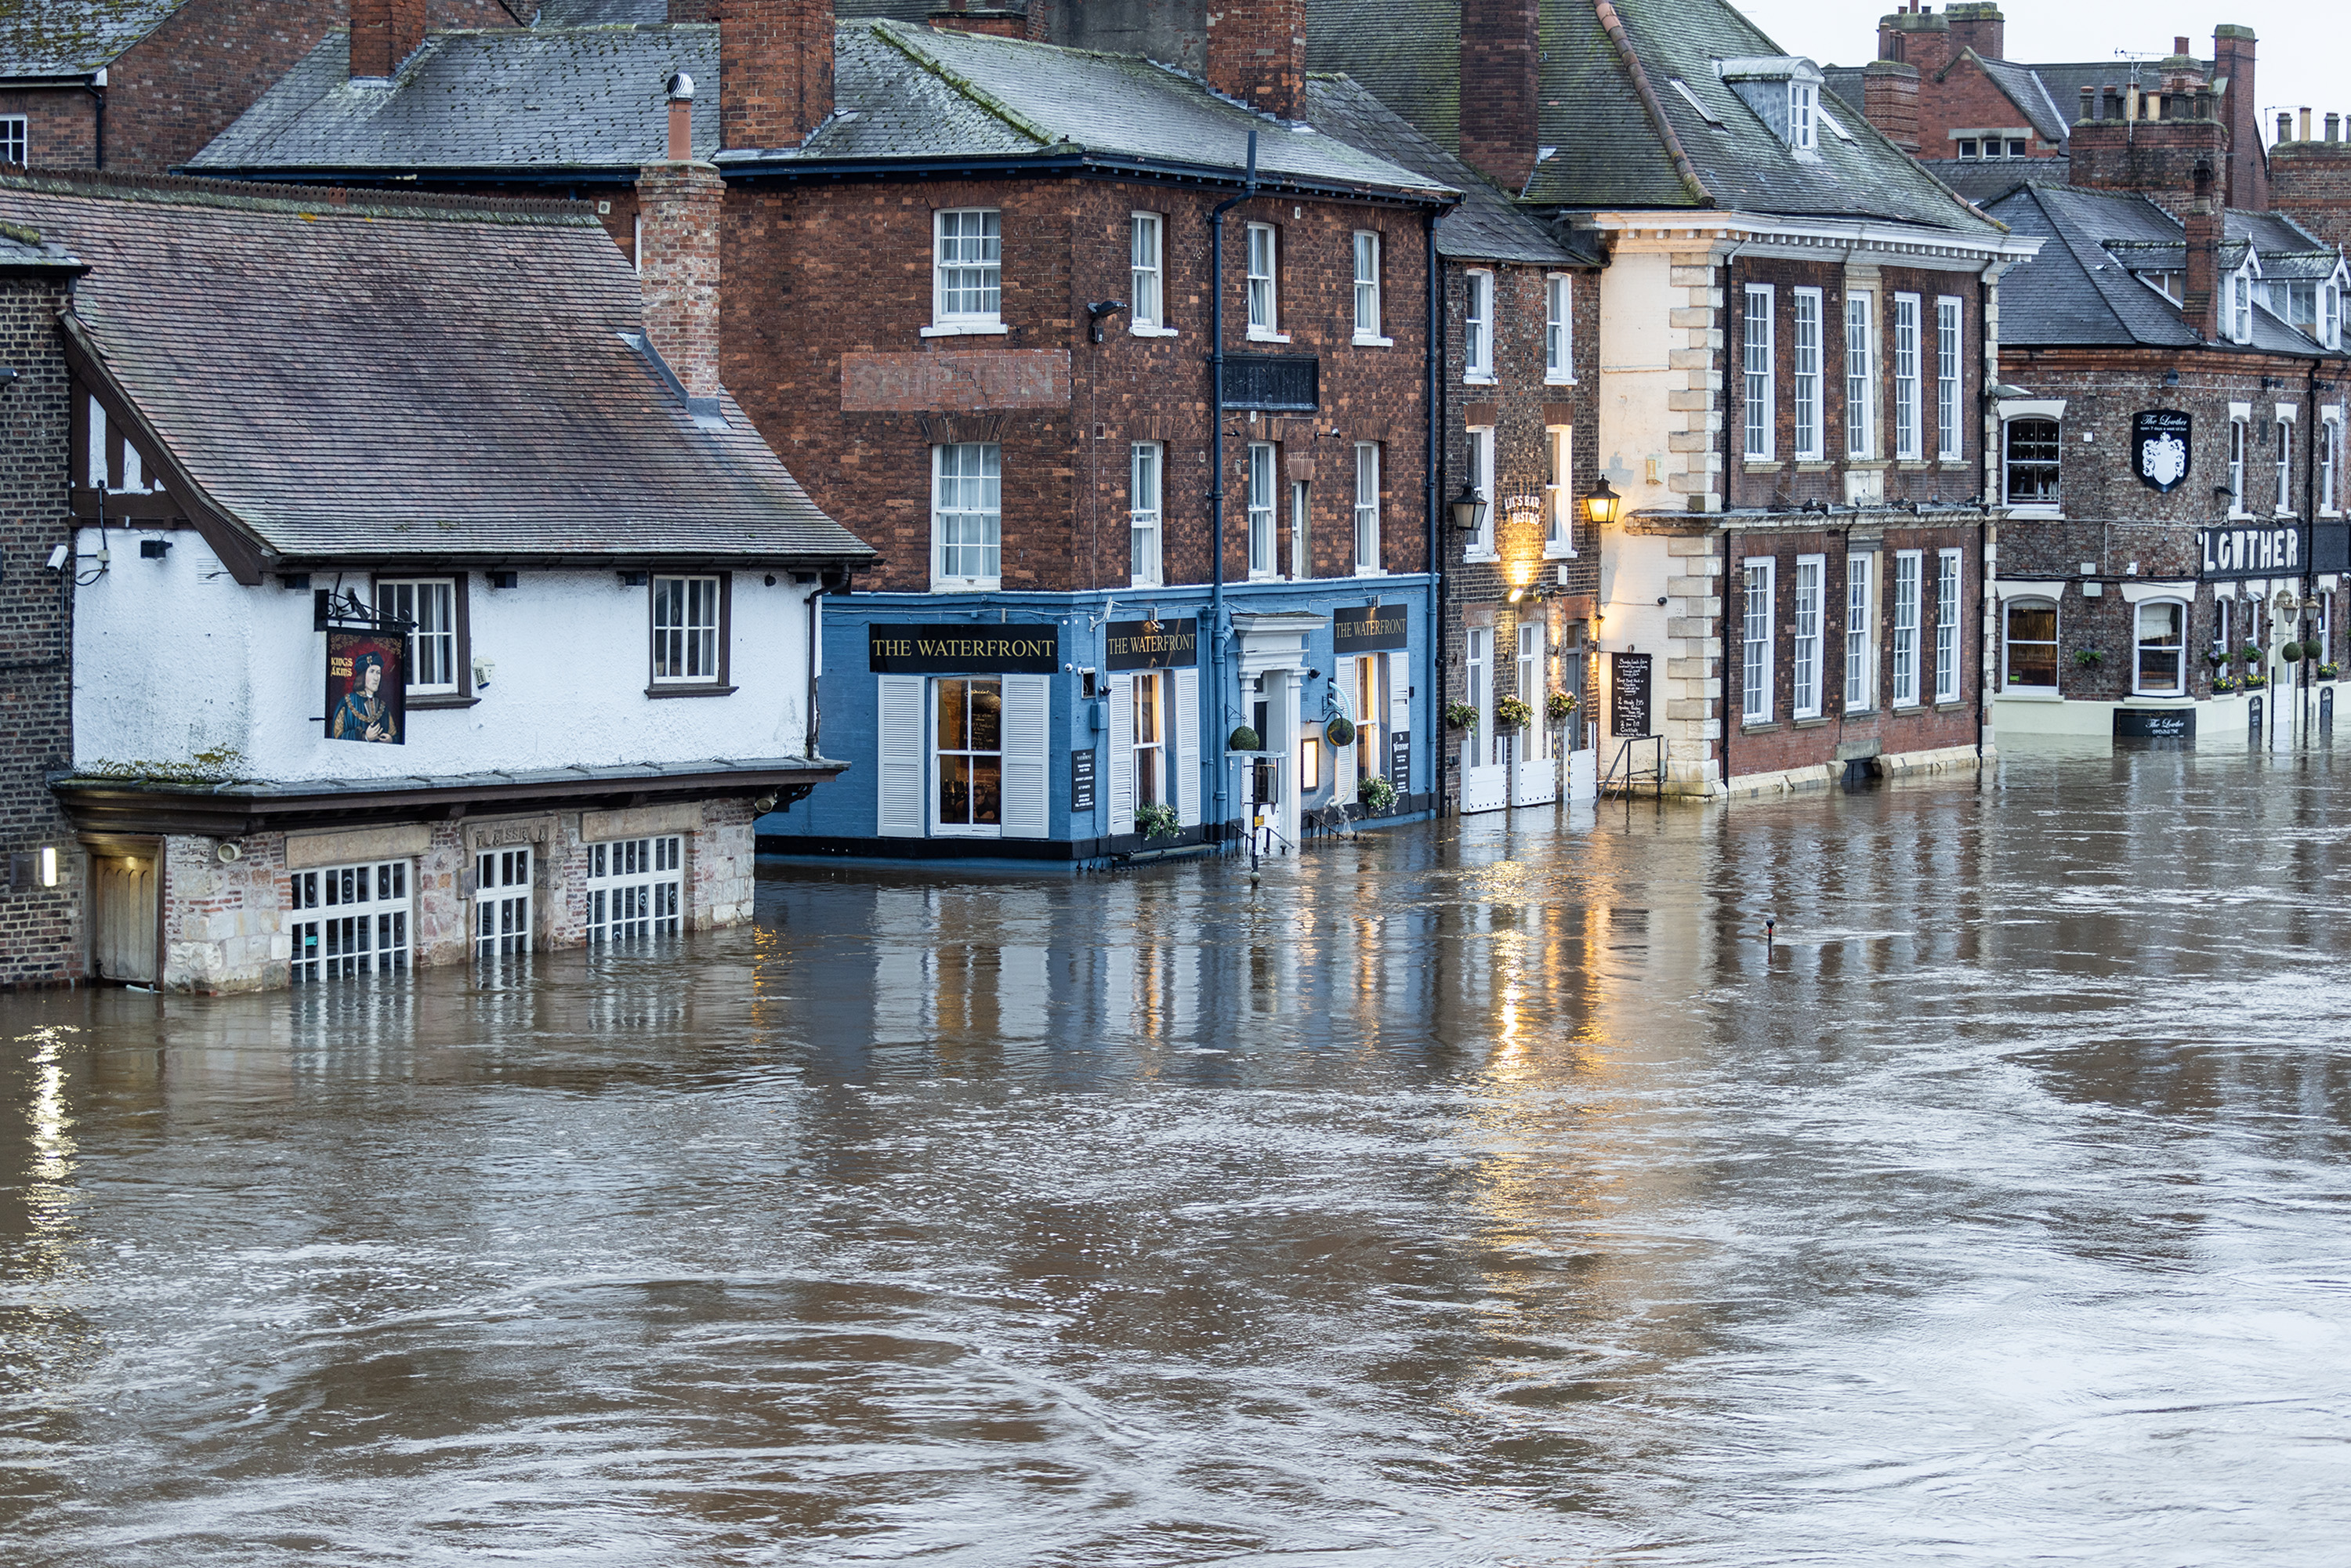 Der Kings Arms Pub in York wurde heute Morgen überschwemmt, wo der Fluss Ouse über die Ufer trat